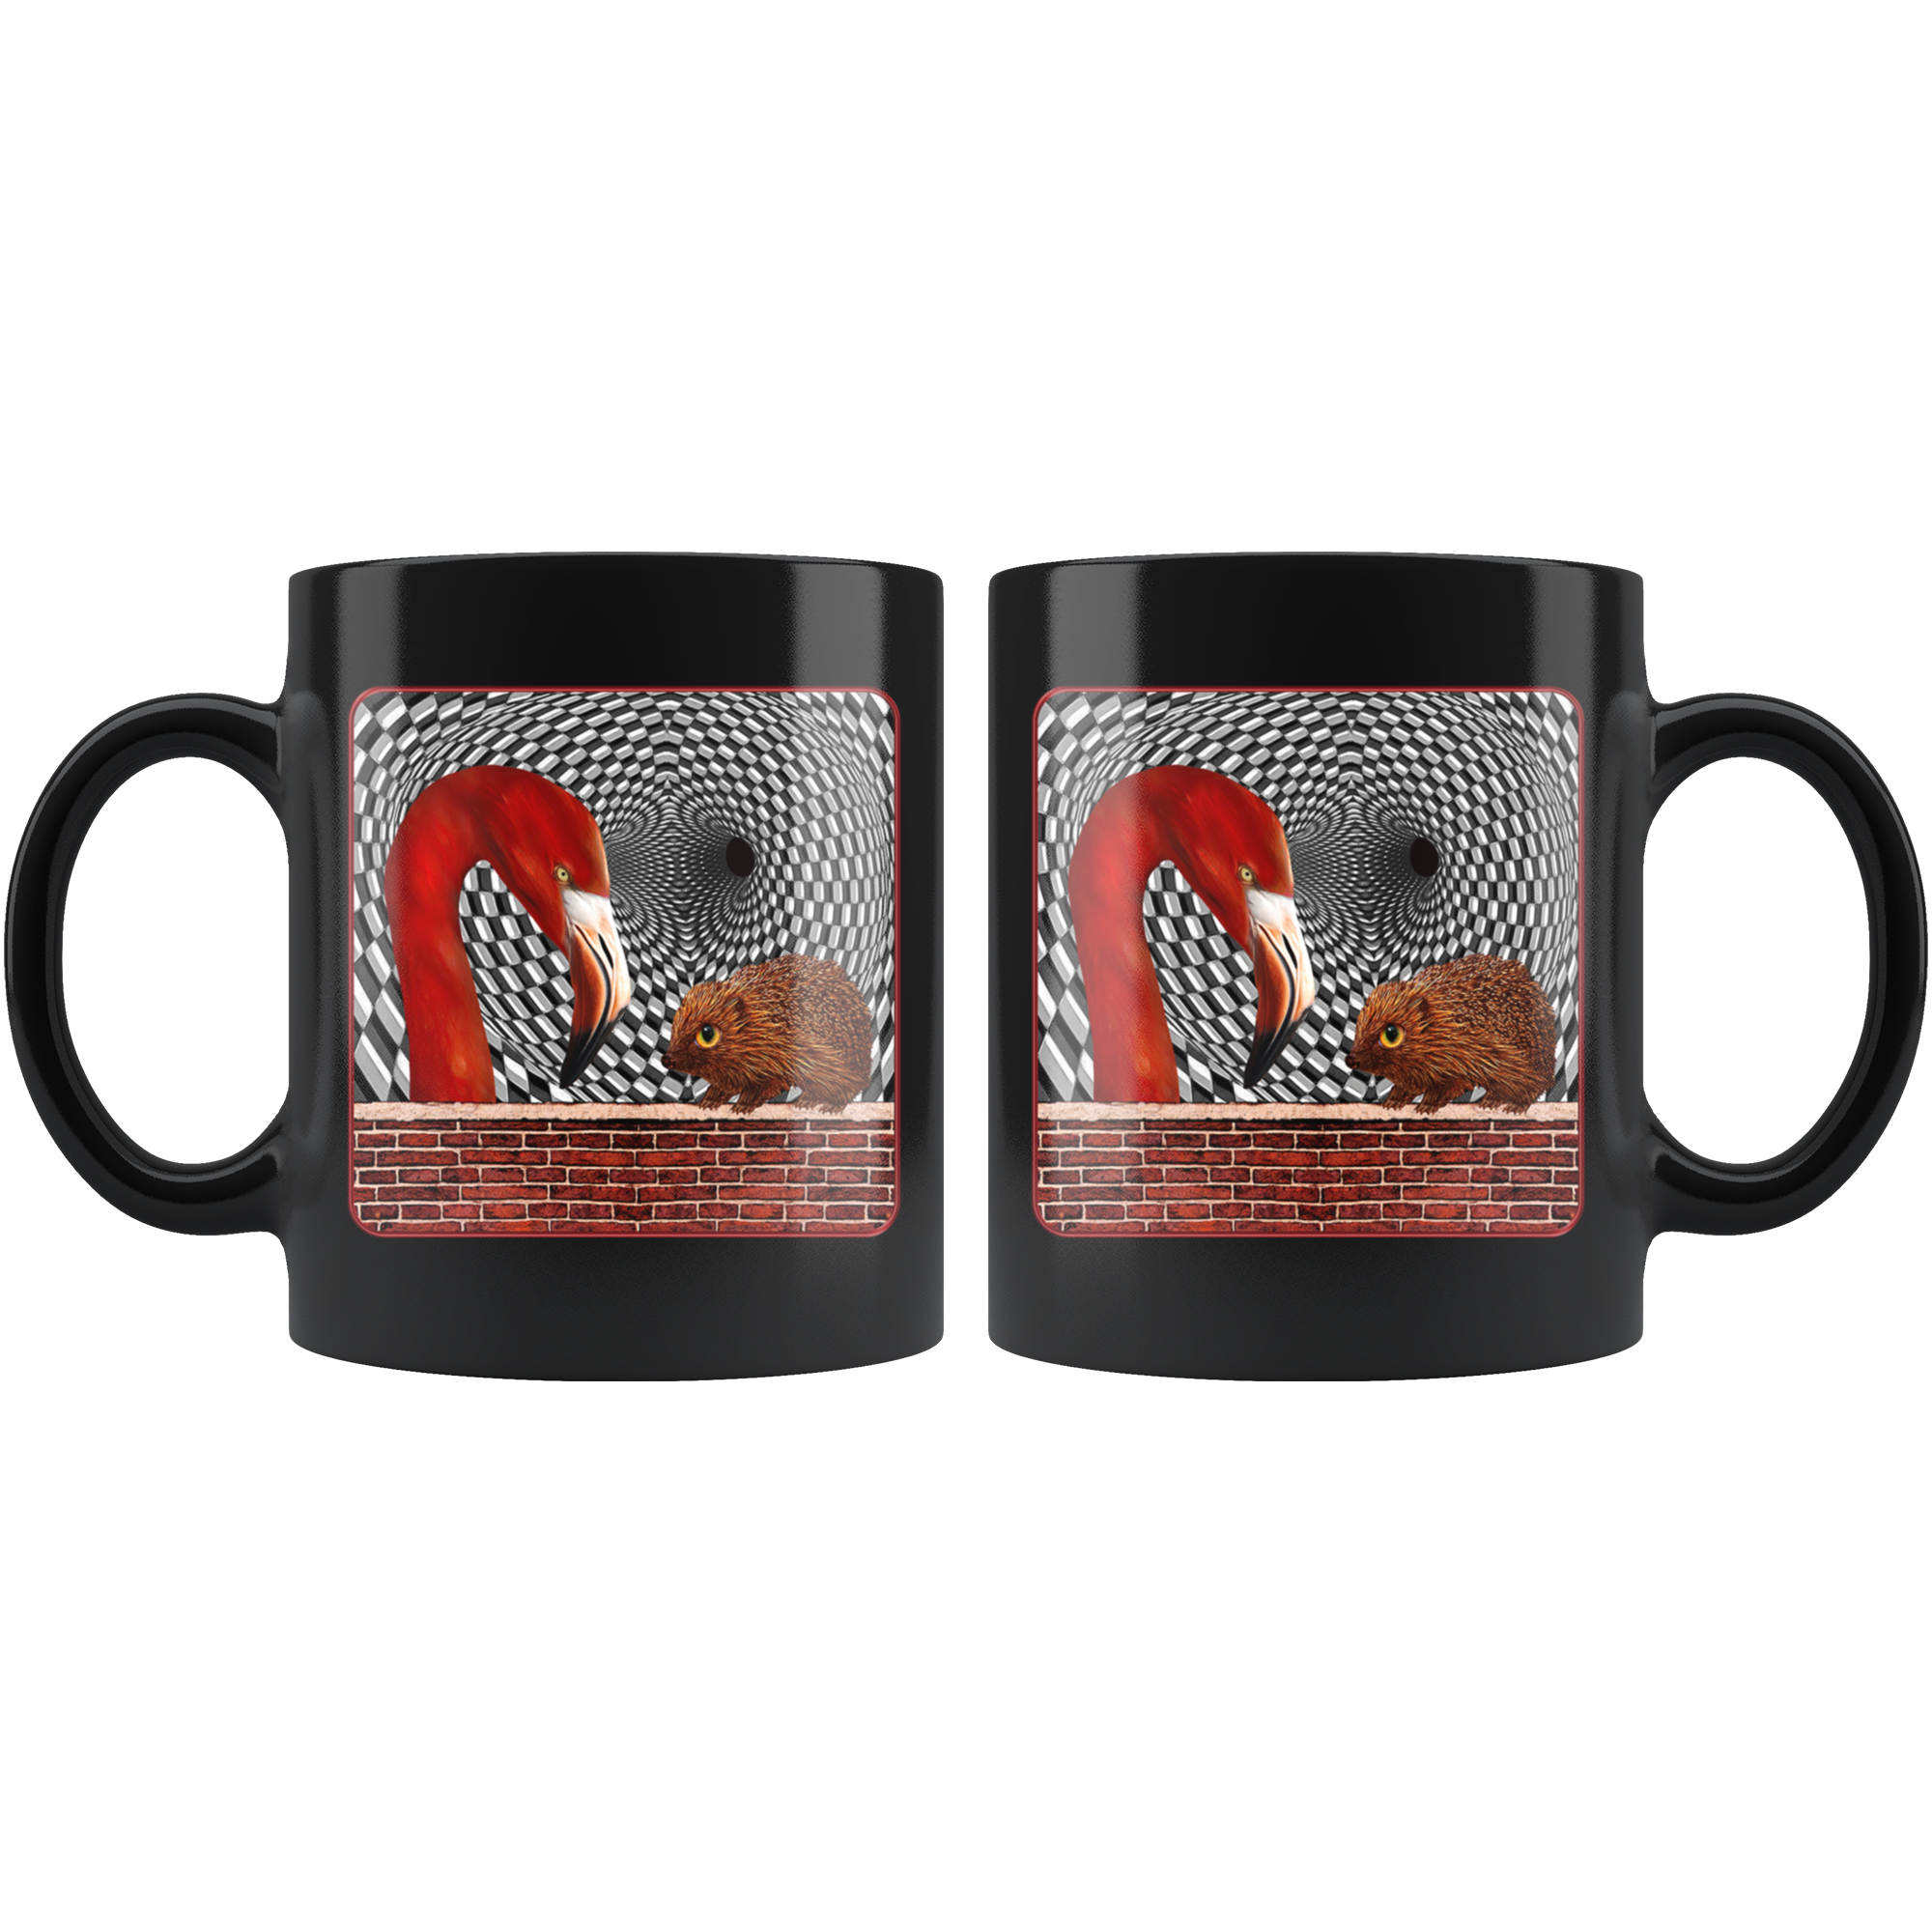 The Hedgehog and the Flamingo - 11 oz black mug